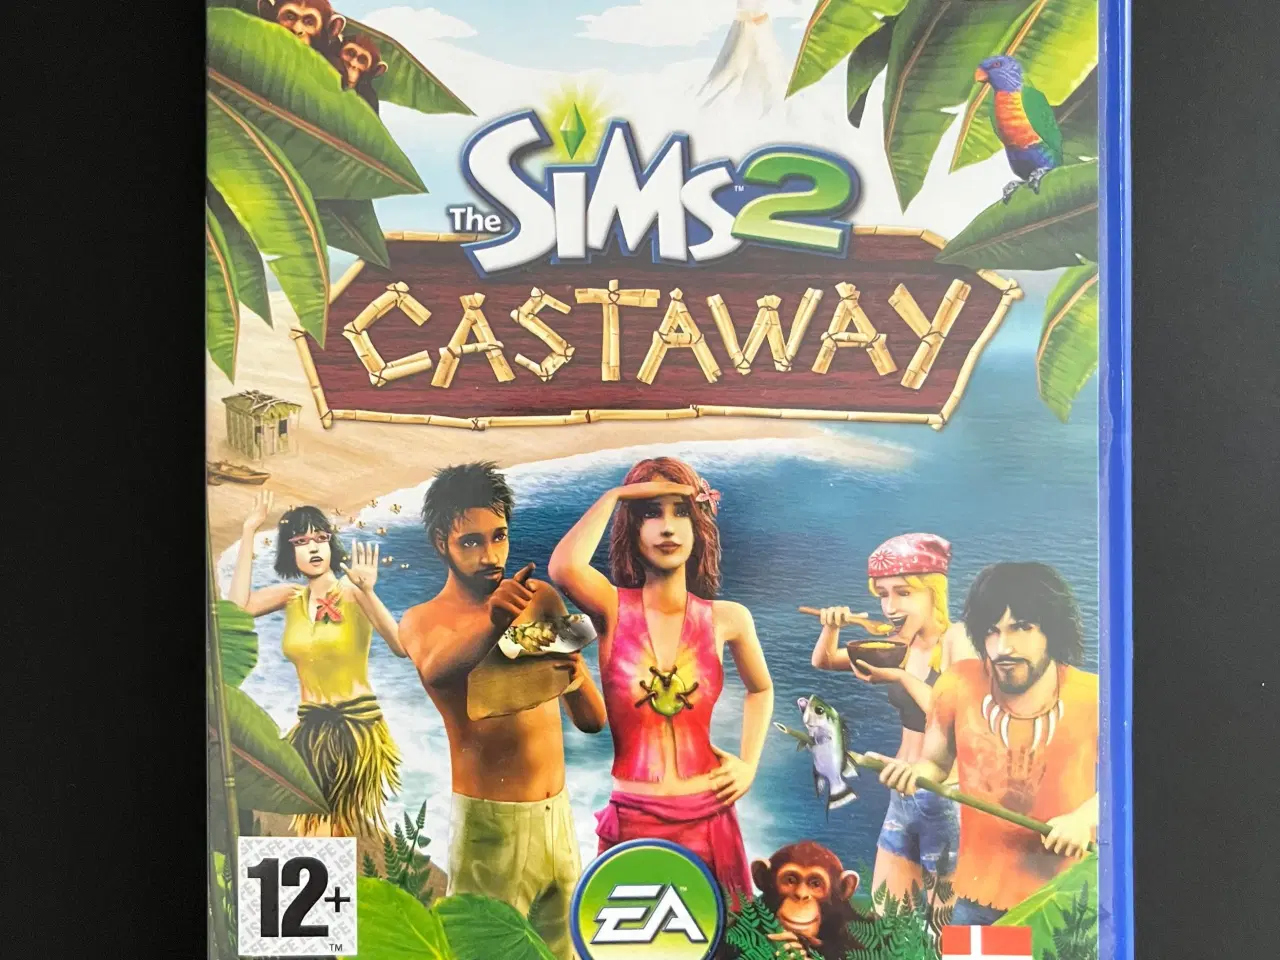 Billede 1 - The Sims 2 Castaway 